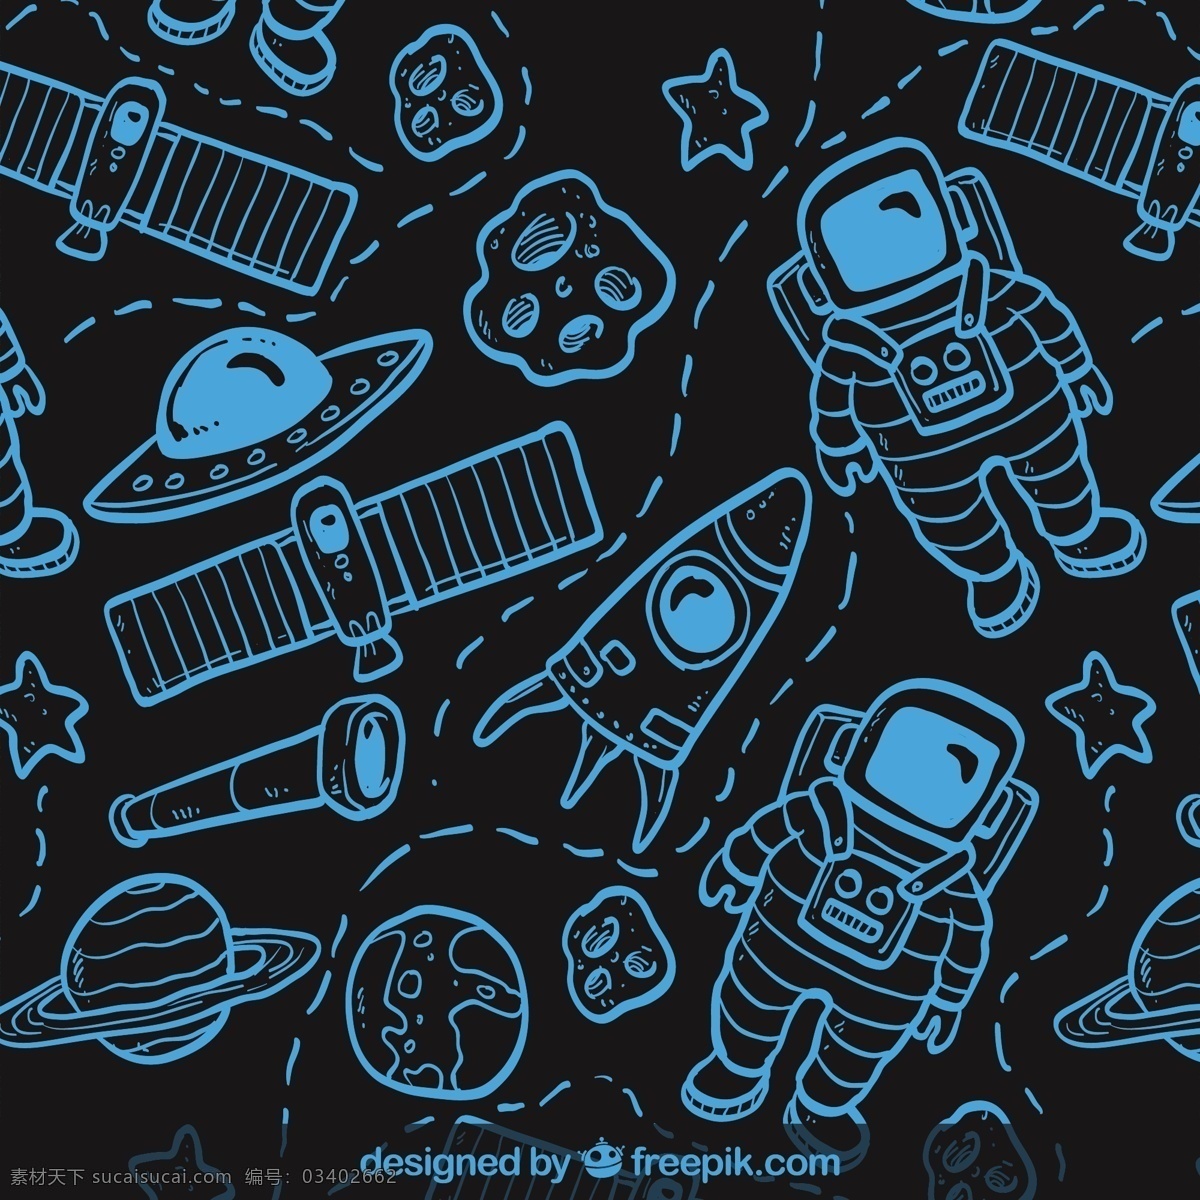 手绘空间模式 模式 一方面 手绘 空间 火箭 星系图 星球 宇航员 无缝模式 宇宙飞船 无缝 手工绘图 绘制的 粗略的 黑色